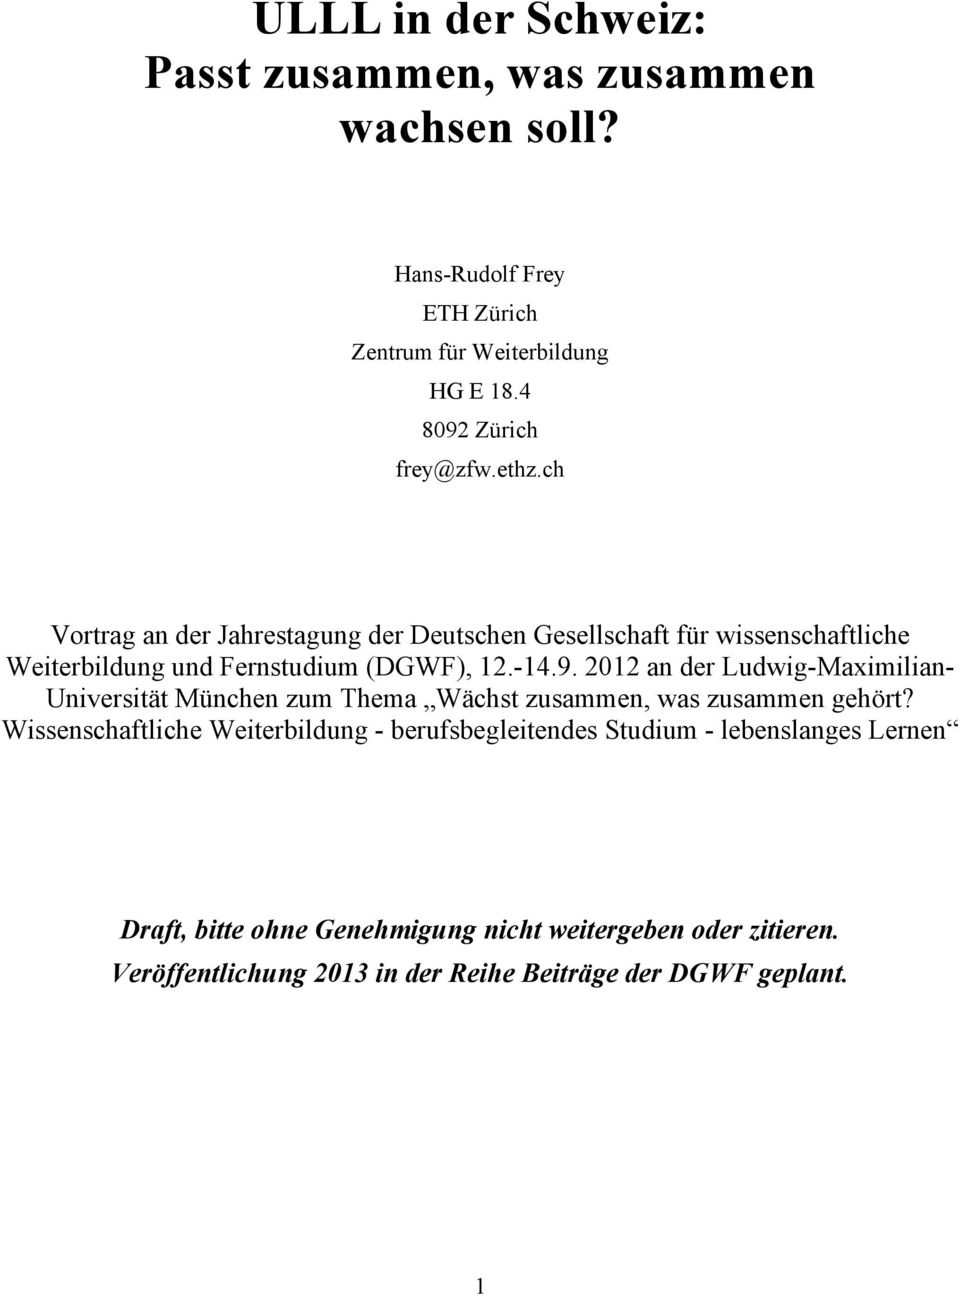 ch Vortrag an der Jahrestagung der Deutschen Gesellschaft für wissenschaftliche Weiterbildung und Fernstudium (DGWF), 12.-14.9.